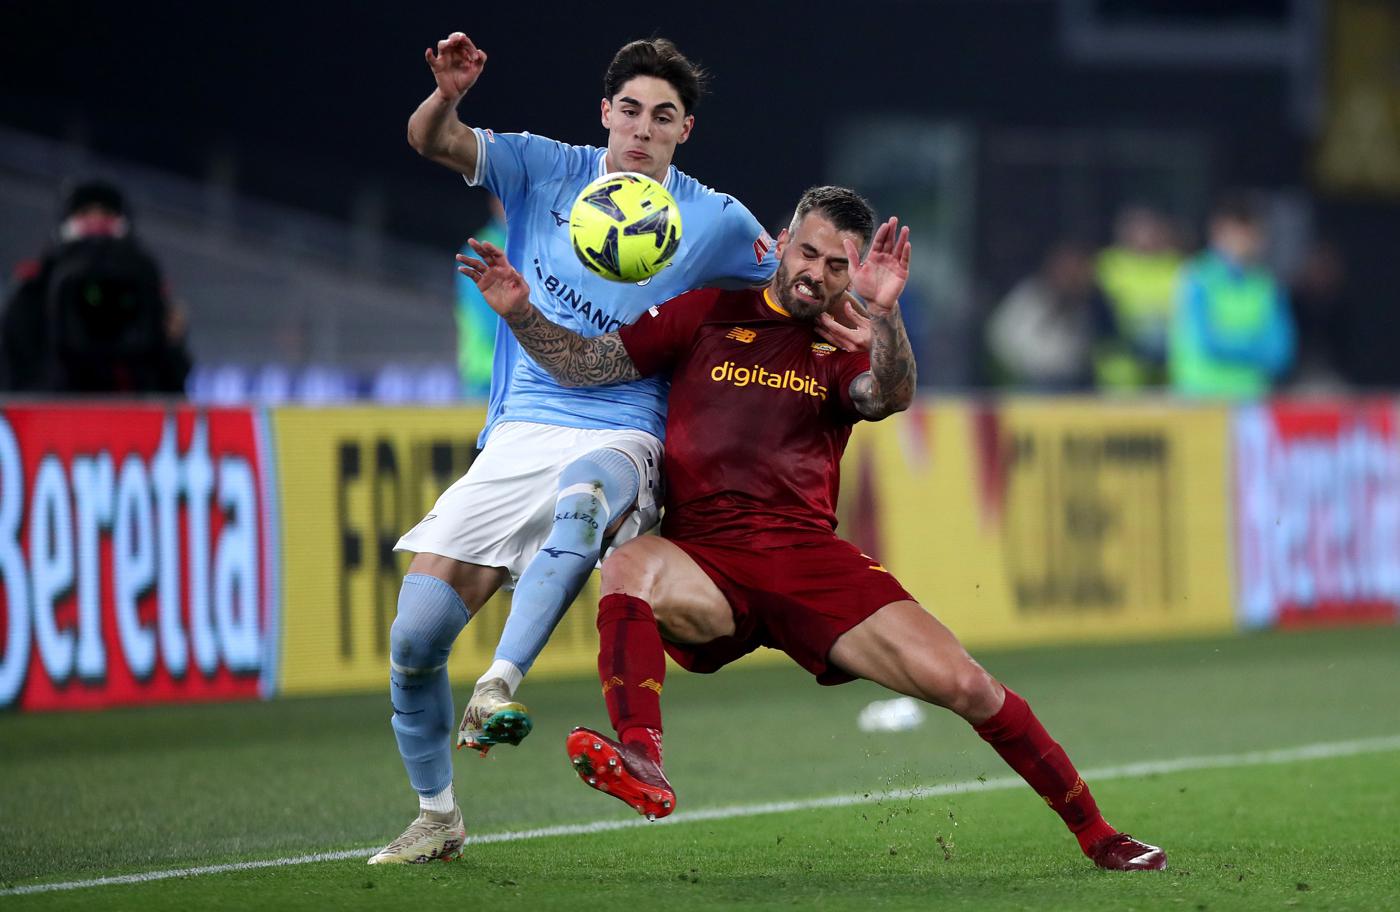 Lazio vs Roma - 1:0. Italian Championship, 27th round. Match Review, Statistics